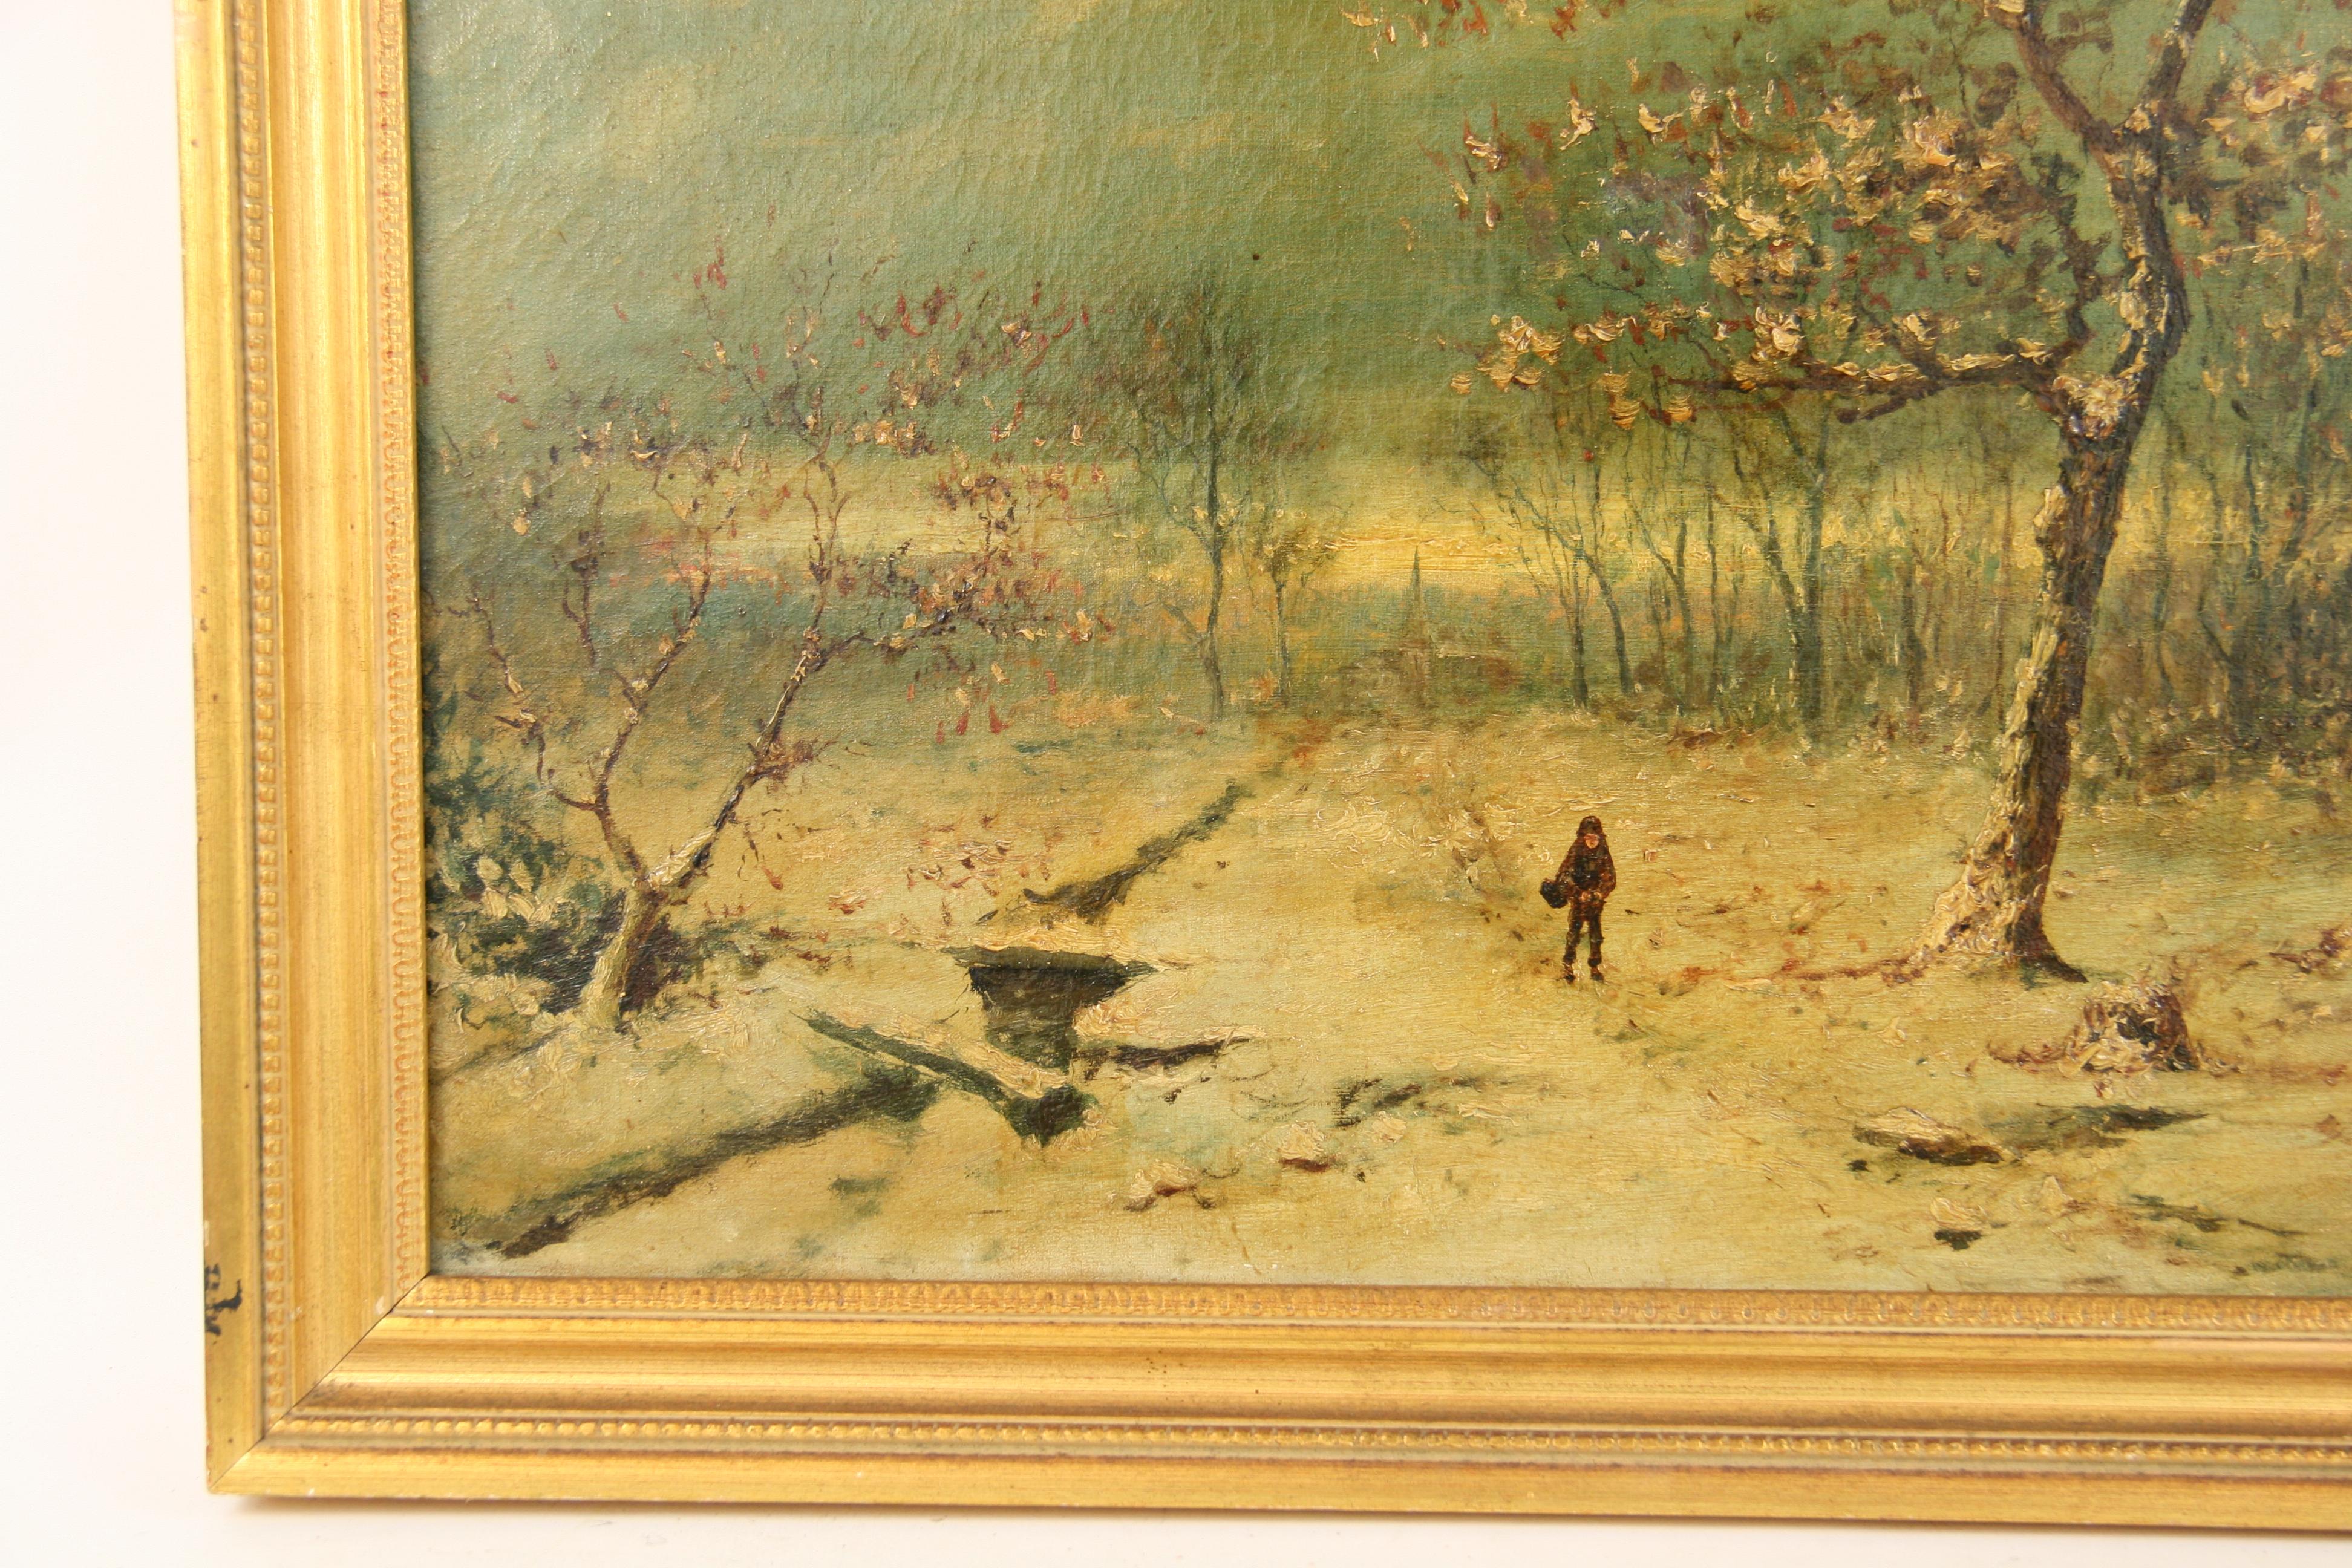 #5-2997 Winterschnee, ein Ölgemälde aus den 1920er Jahren, das die Einsamkeit und Schönheit eines frisch gefallenen Schnees zeigt, in einem vergoldeten Holzrahmen präsentiert, Künstler unbekannt